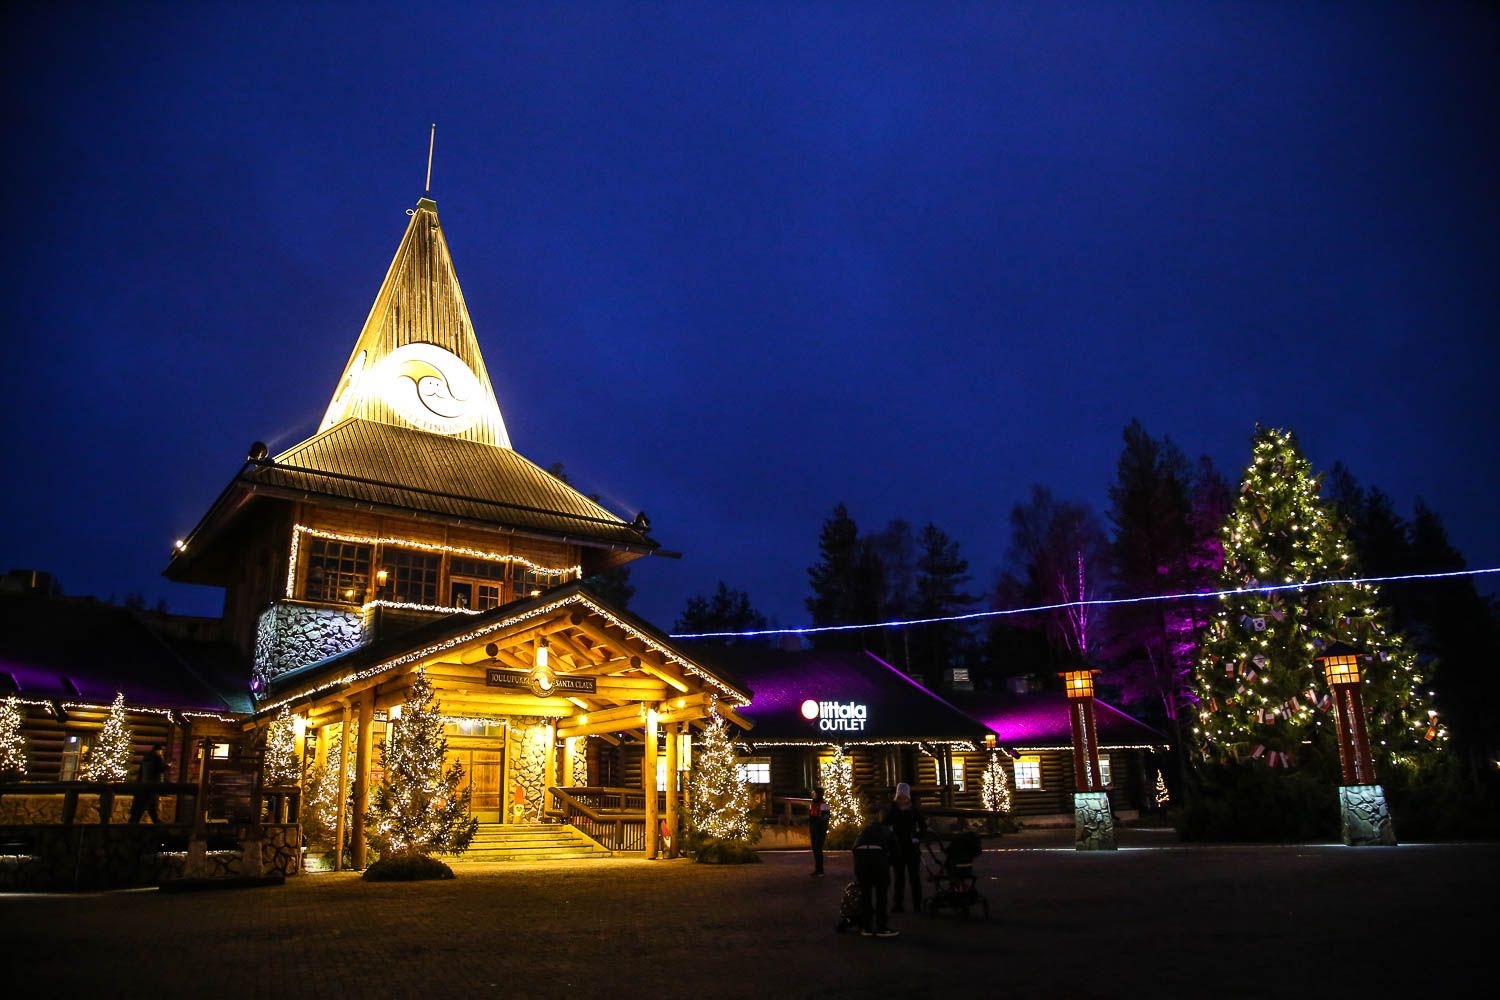 Rovaniemen hotelliloma: kaamoksen värikylpy ja treffit pukin kanssa